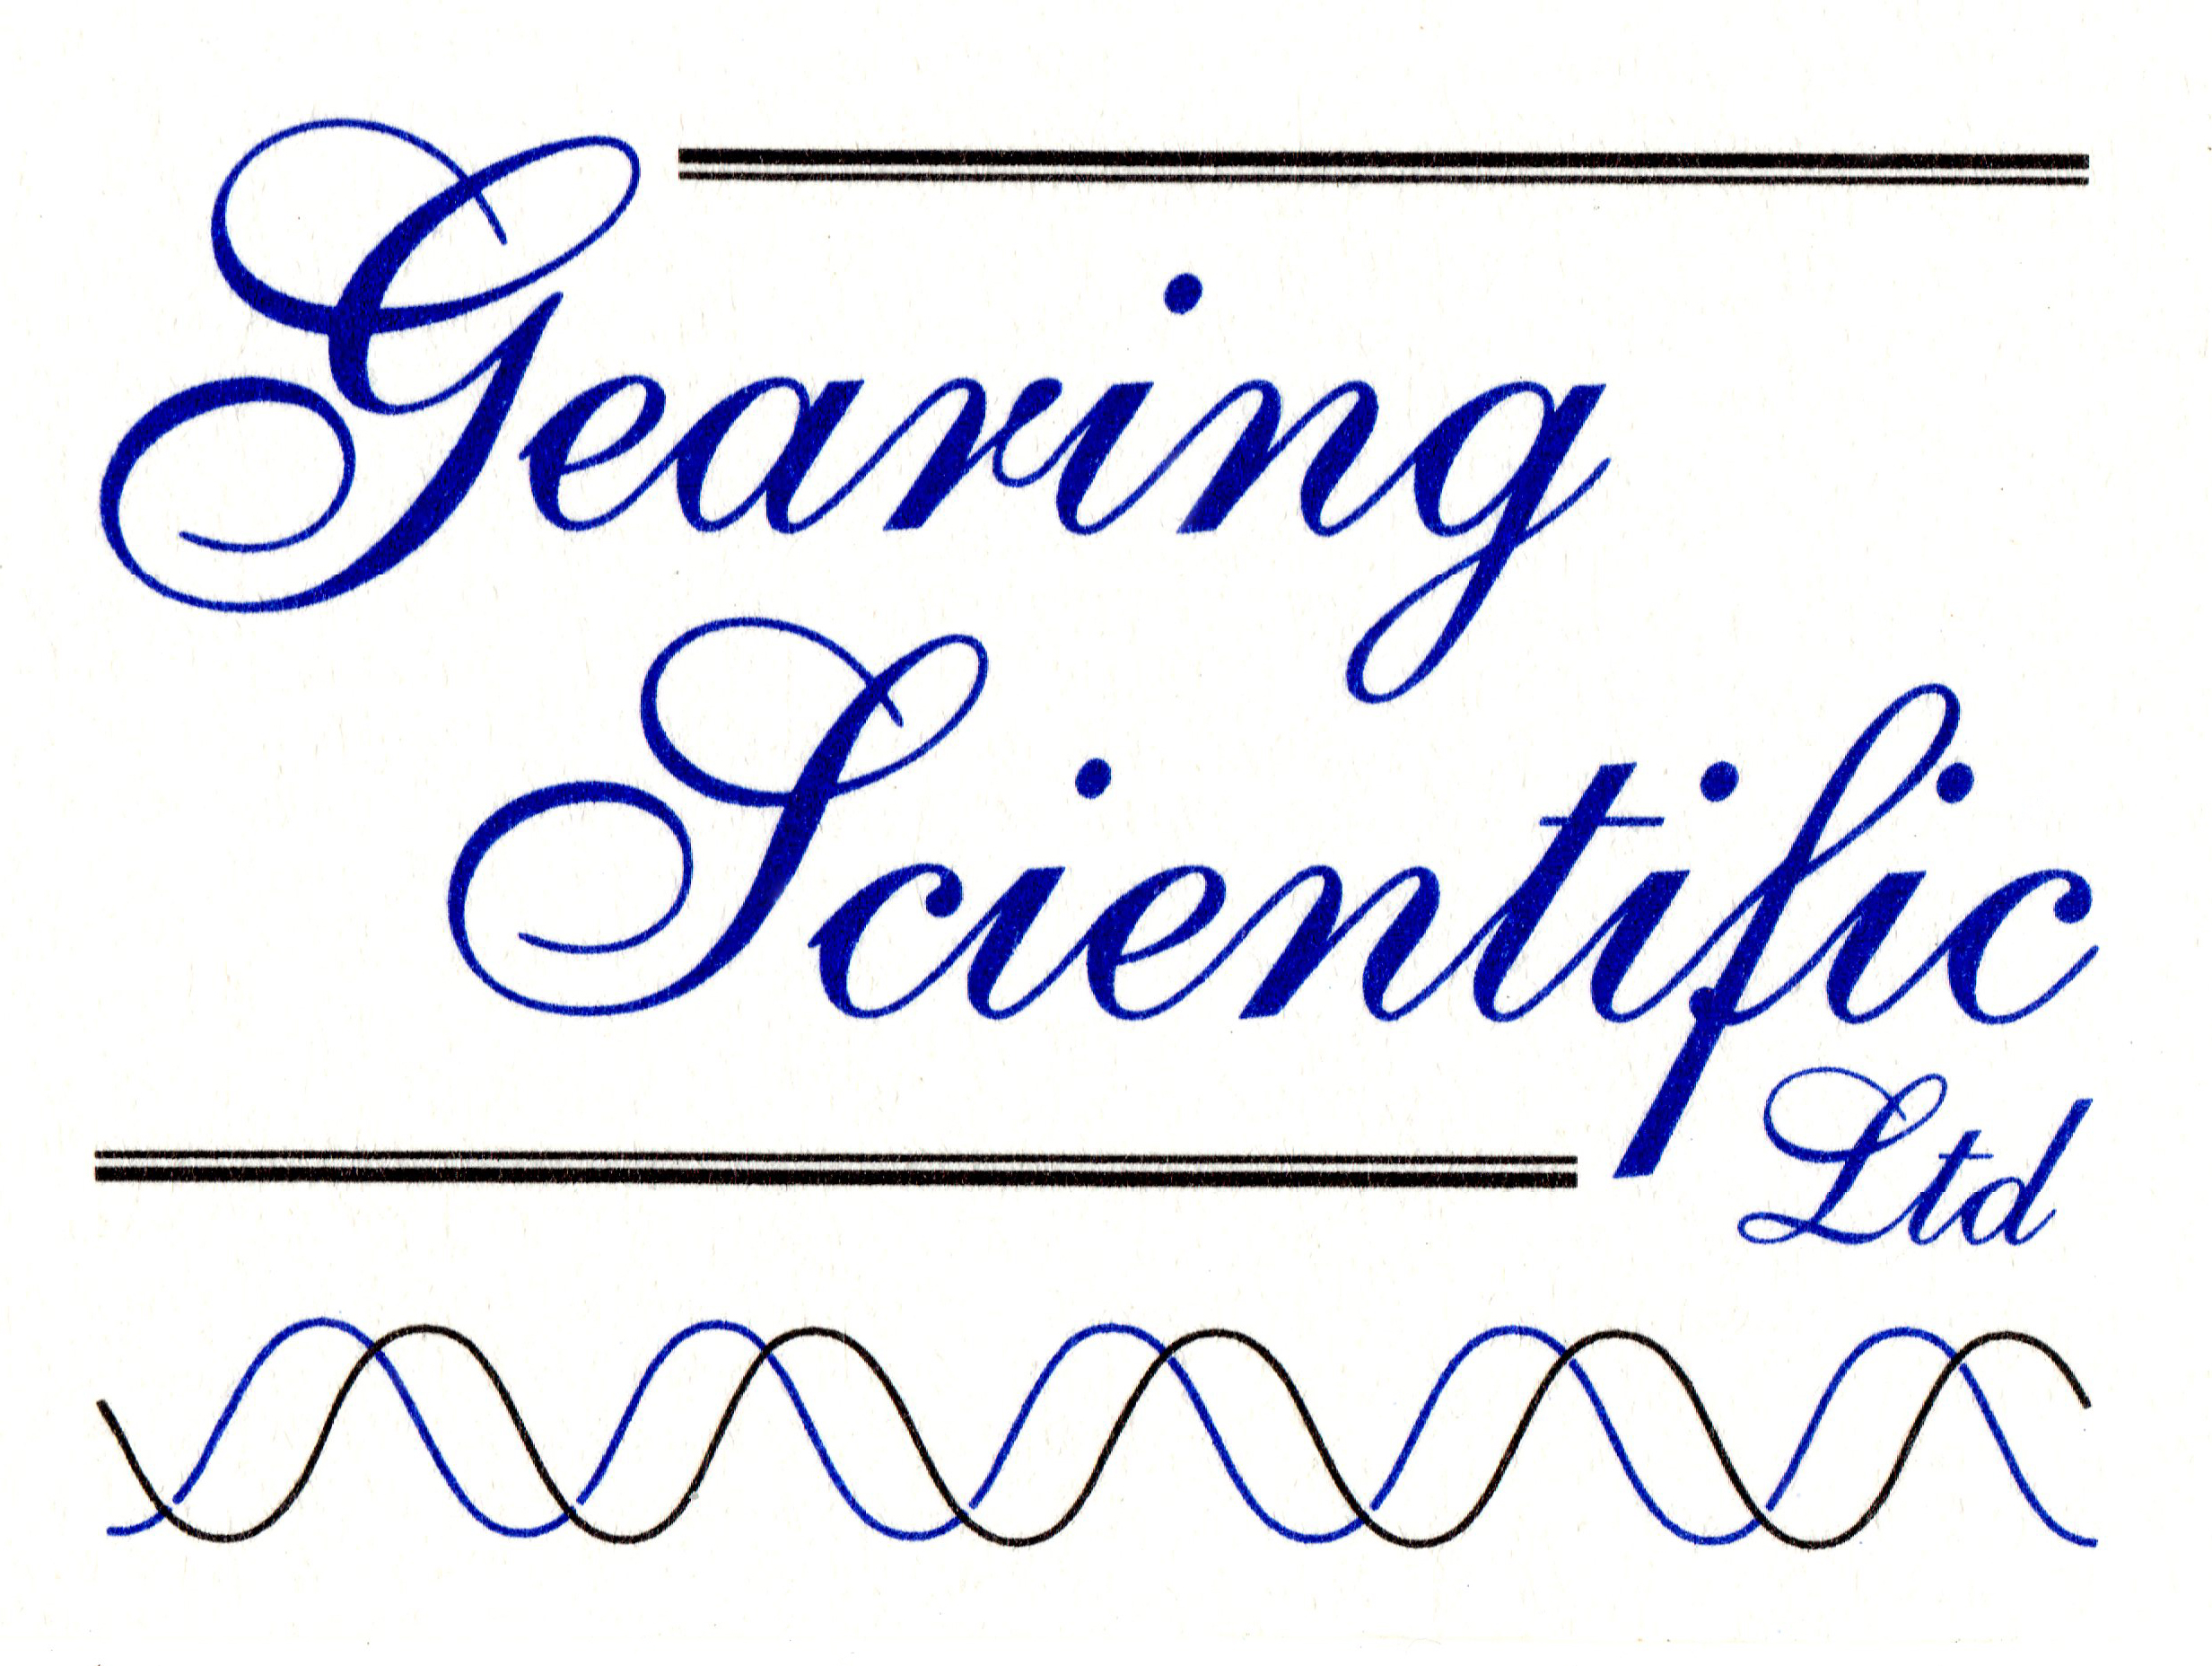 Gearing Scientific Ltd